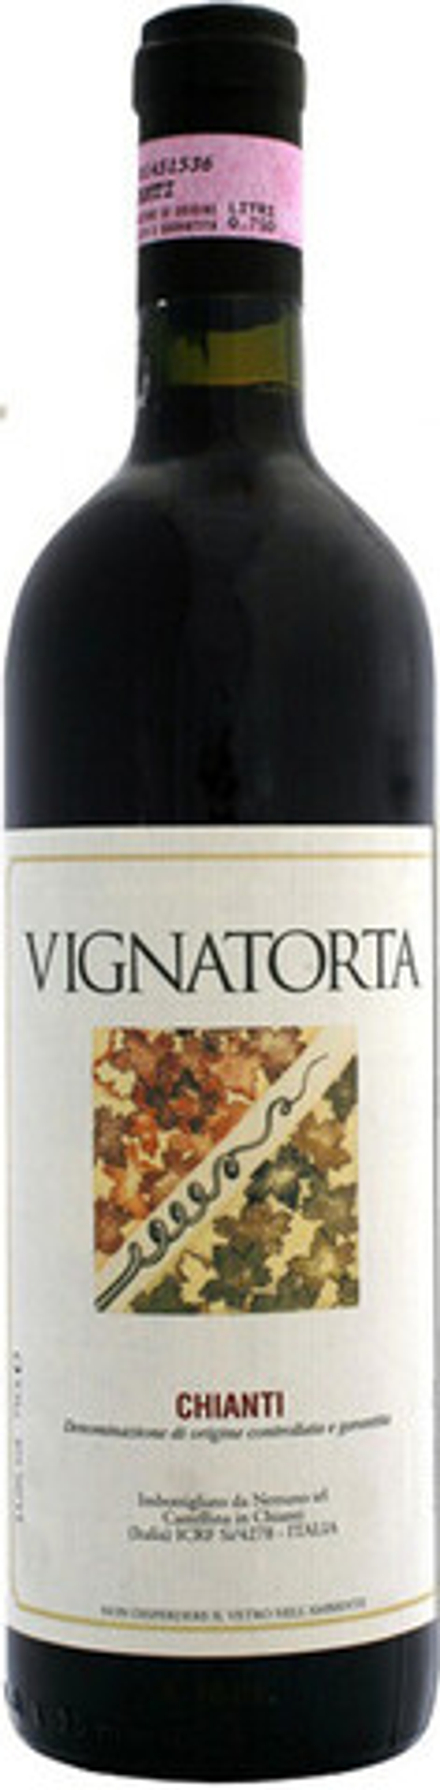 Вино Castellare di Castellina Vignatorta Chianti, 0,75 л.